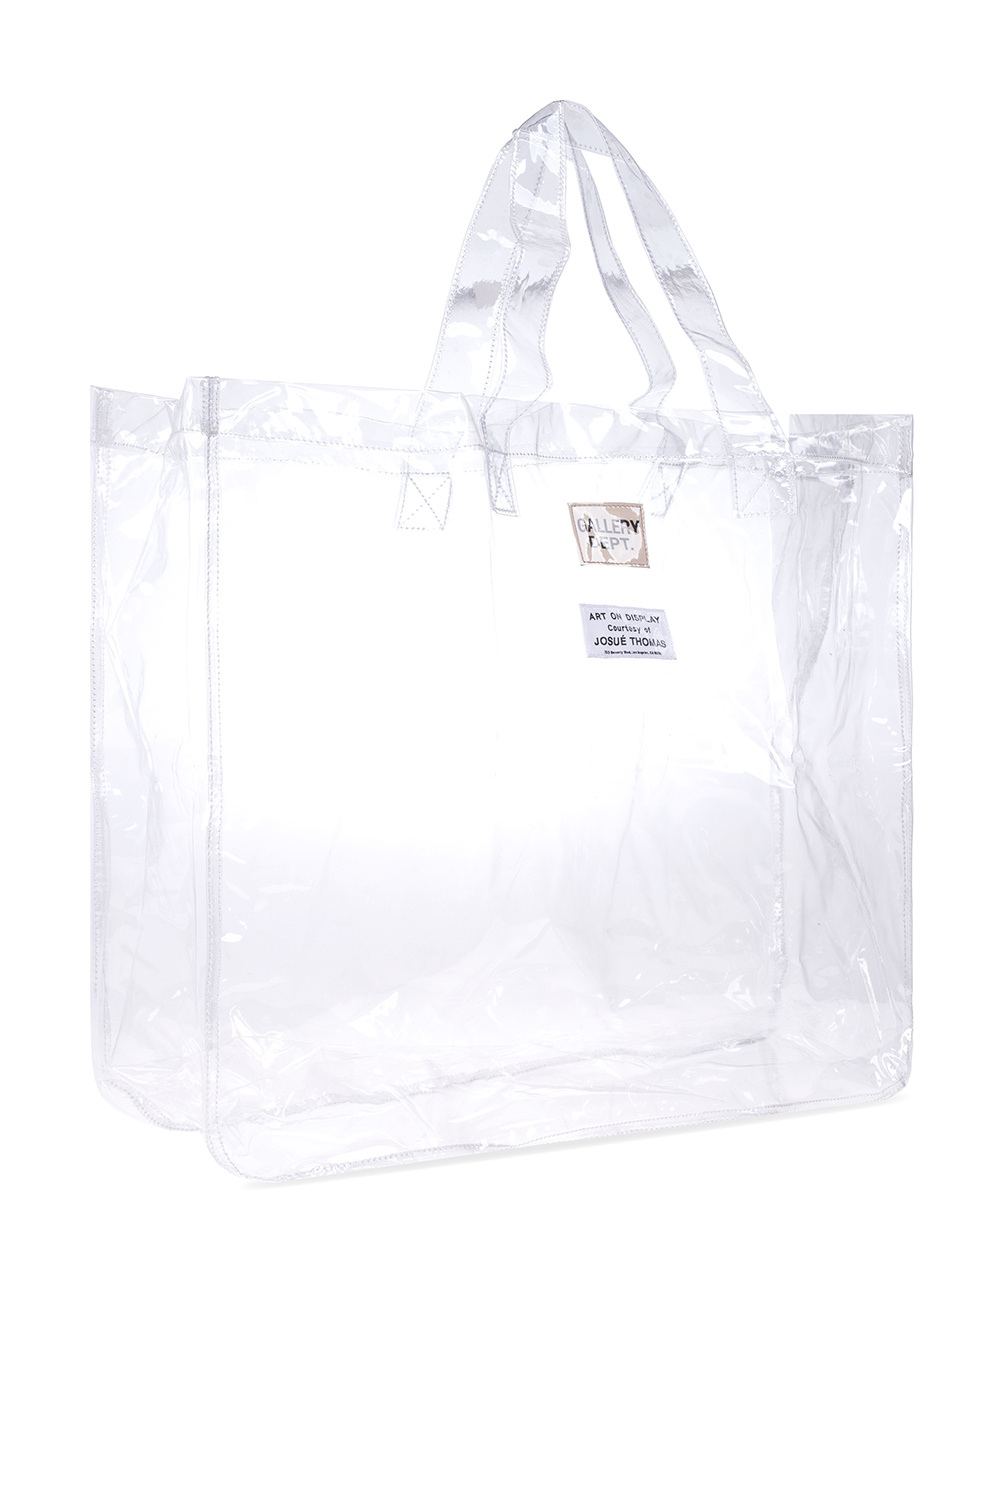 GALLERY DEPT. Shopper Leather bag